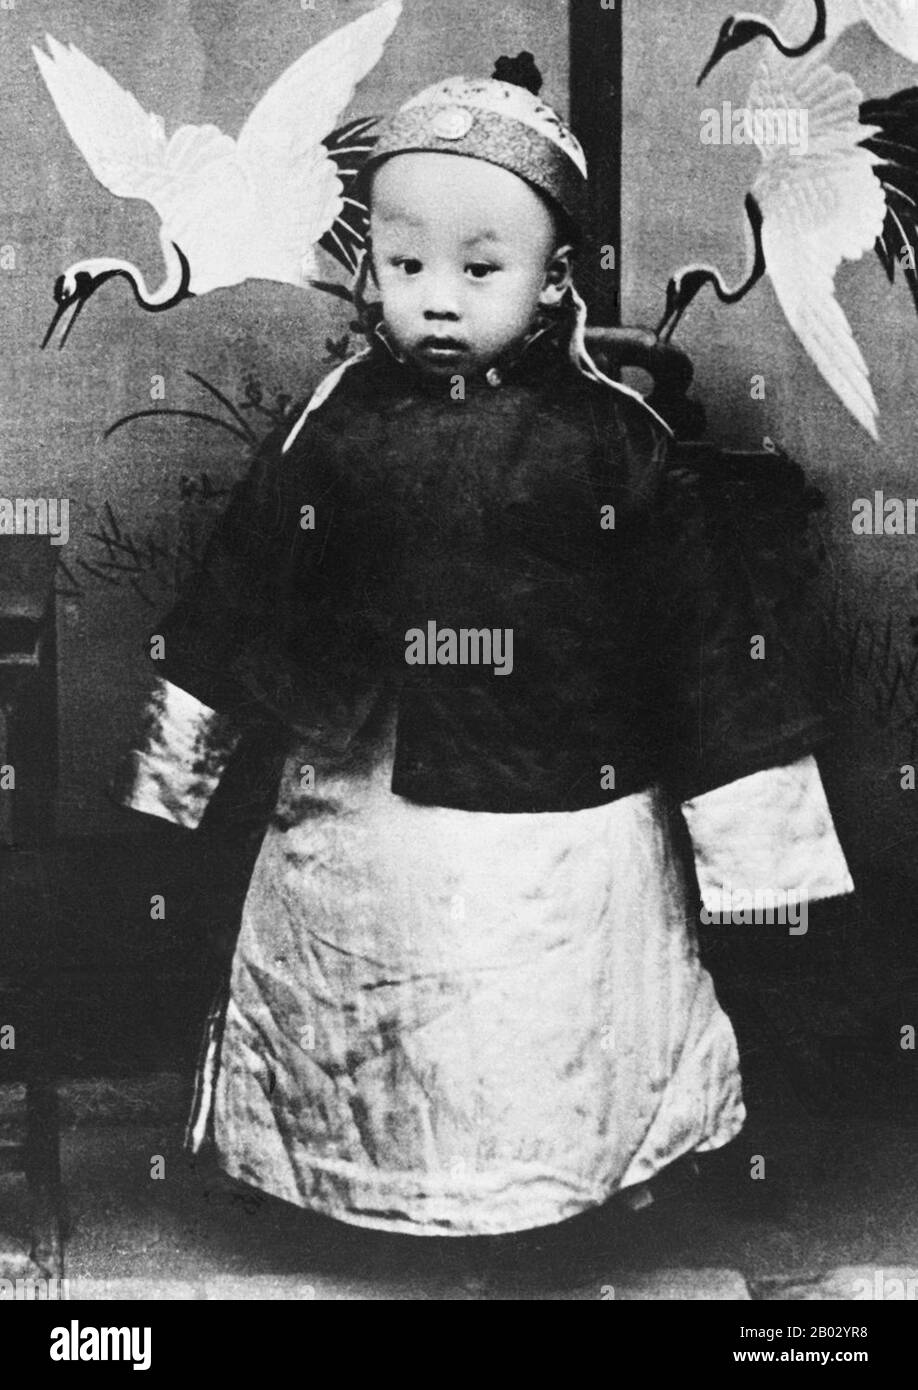 Aisin-Gioro pu Yi (7 febbraio 1906 – 17 ottobre 1967), della famiglia governante Manchu Aisin Gioro, fu l'ultimo imperatore della Cina. Regnò in due periodi tra il 1908 e il 1917, dapprima come imperatore Xuantong dal 1908 al 1912, e nominalmente come imperatore marionette non regnante per dodici giorni nel 1917. Era il dodicesimo e ultimo membro della Dinastia Qing a governare sulla Cina vera e propria. Foto Stock